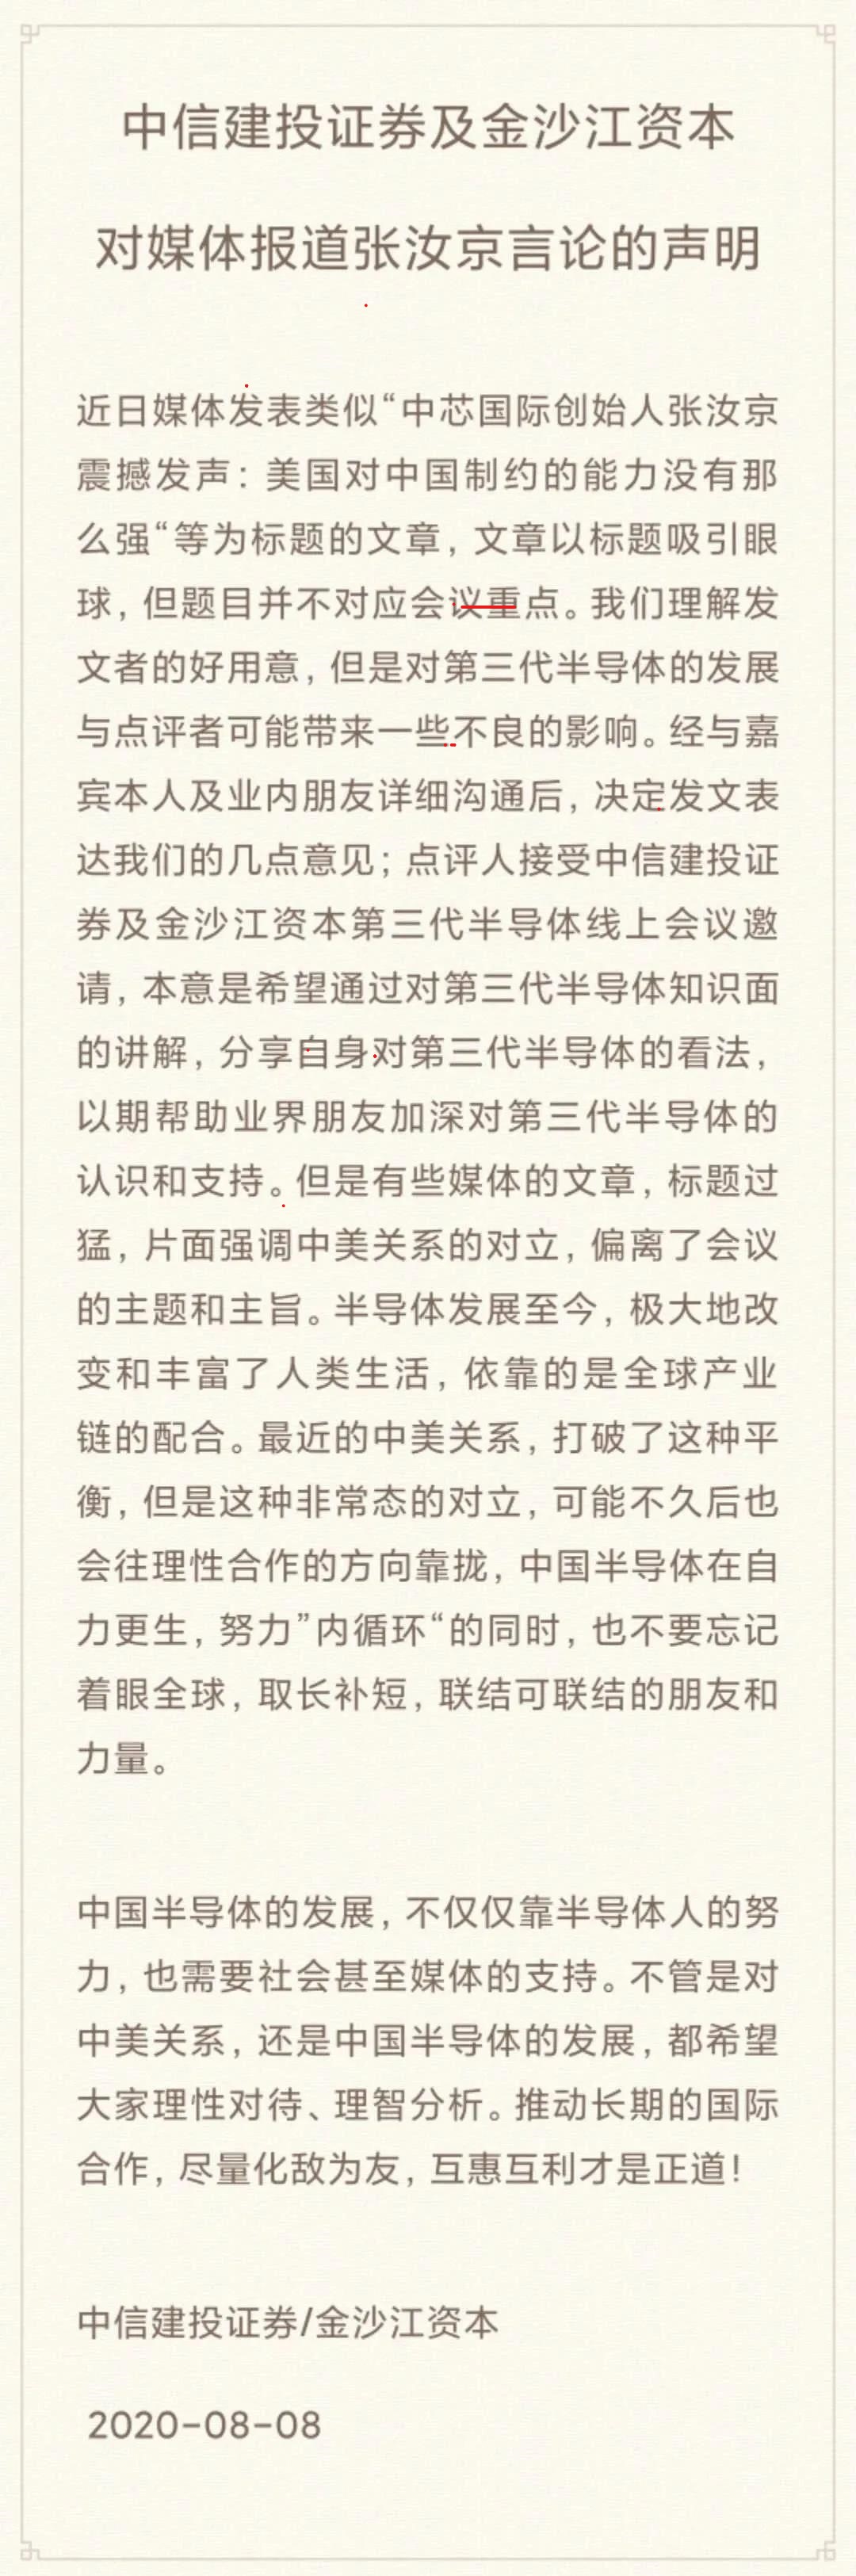 网传张汝京称“美国对中国制约力不强” 主办方回应